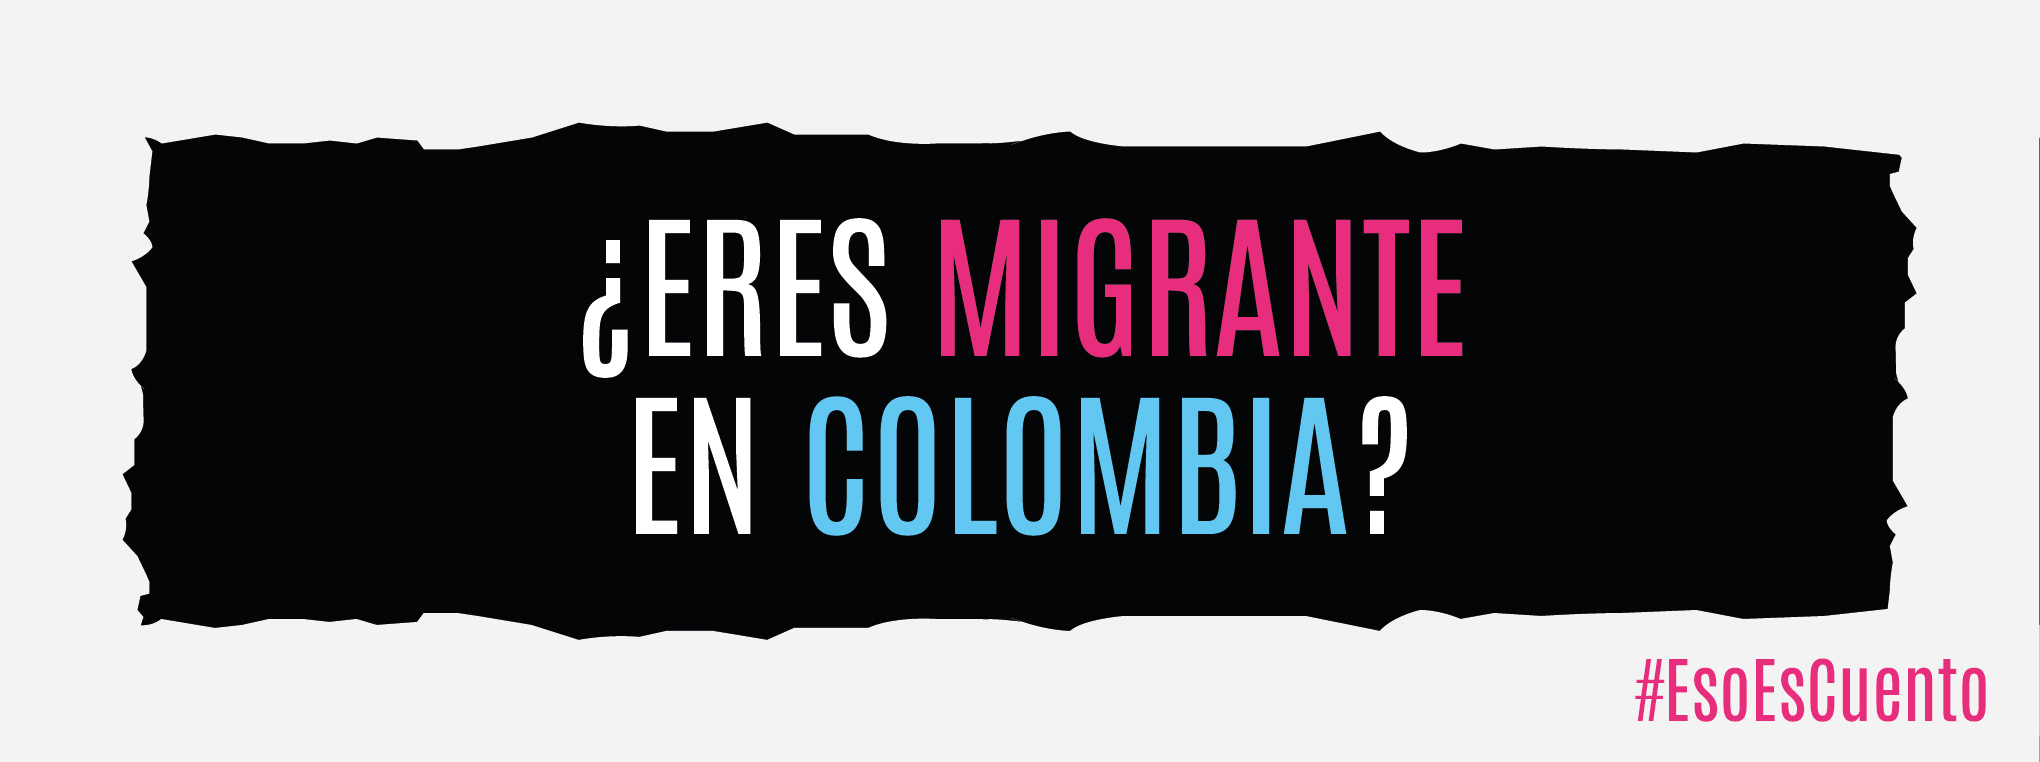 ¿Eres migrante en Colombia?